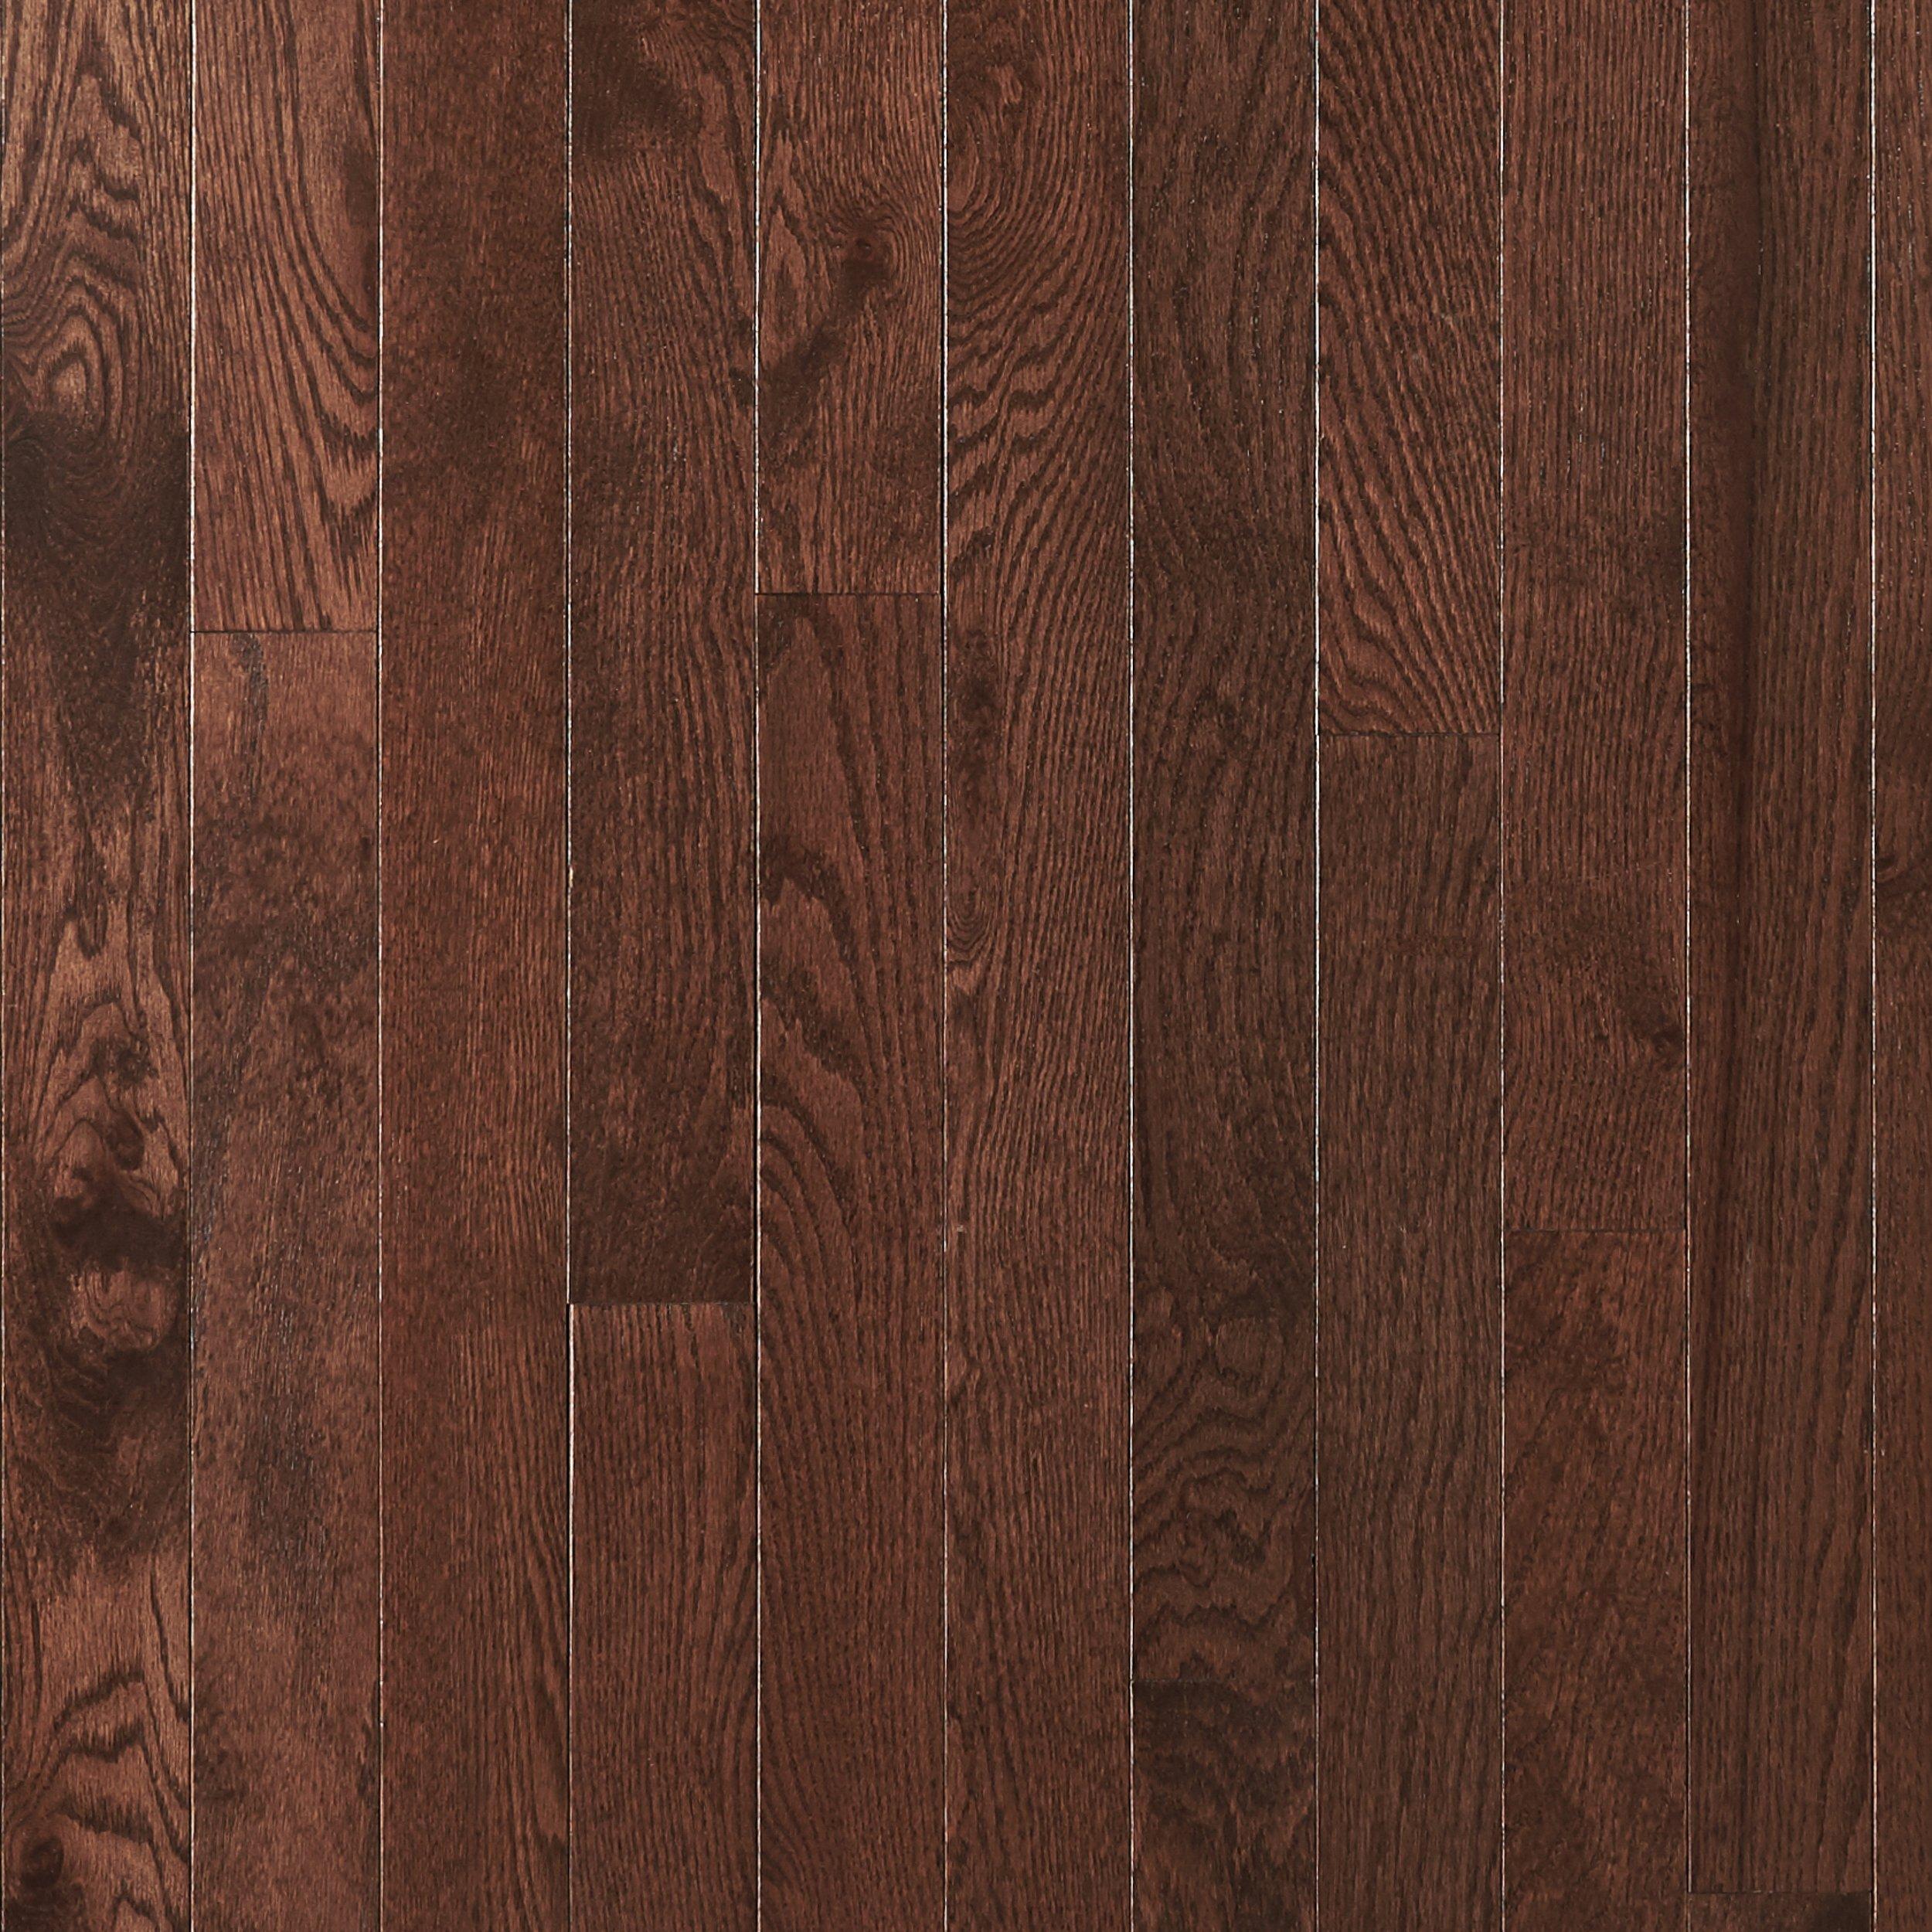 Dark Mocha Oak Smooth Solid Hardwood, Black Solid Hardwood Flooring